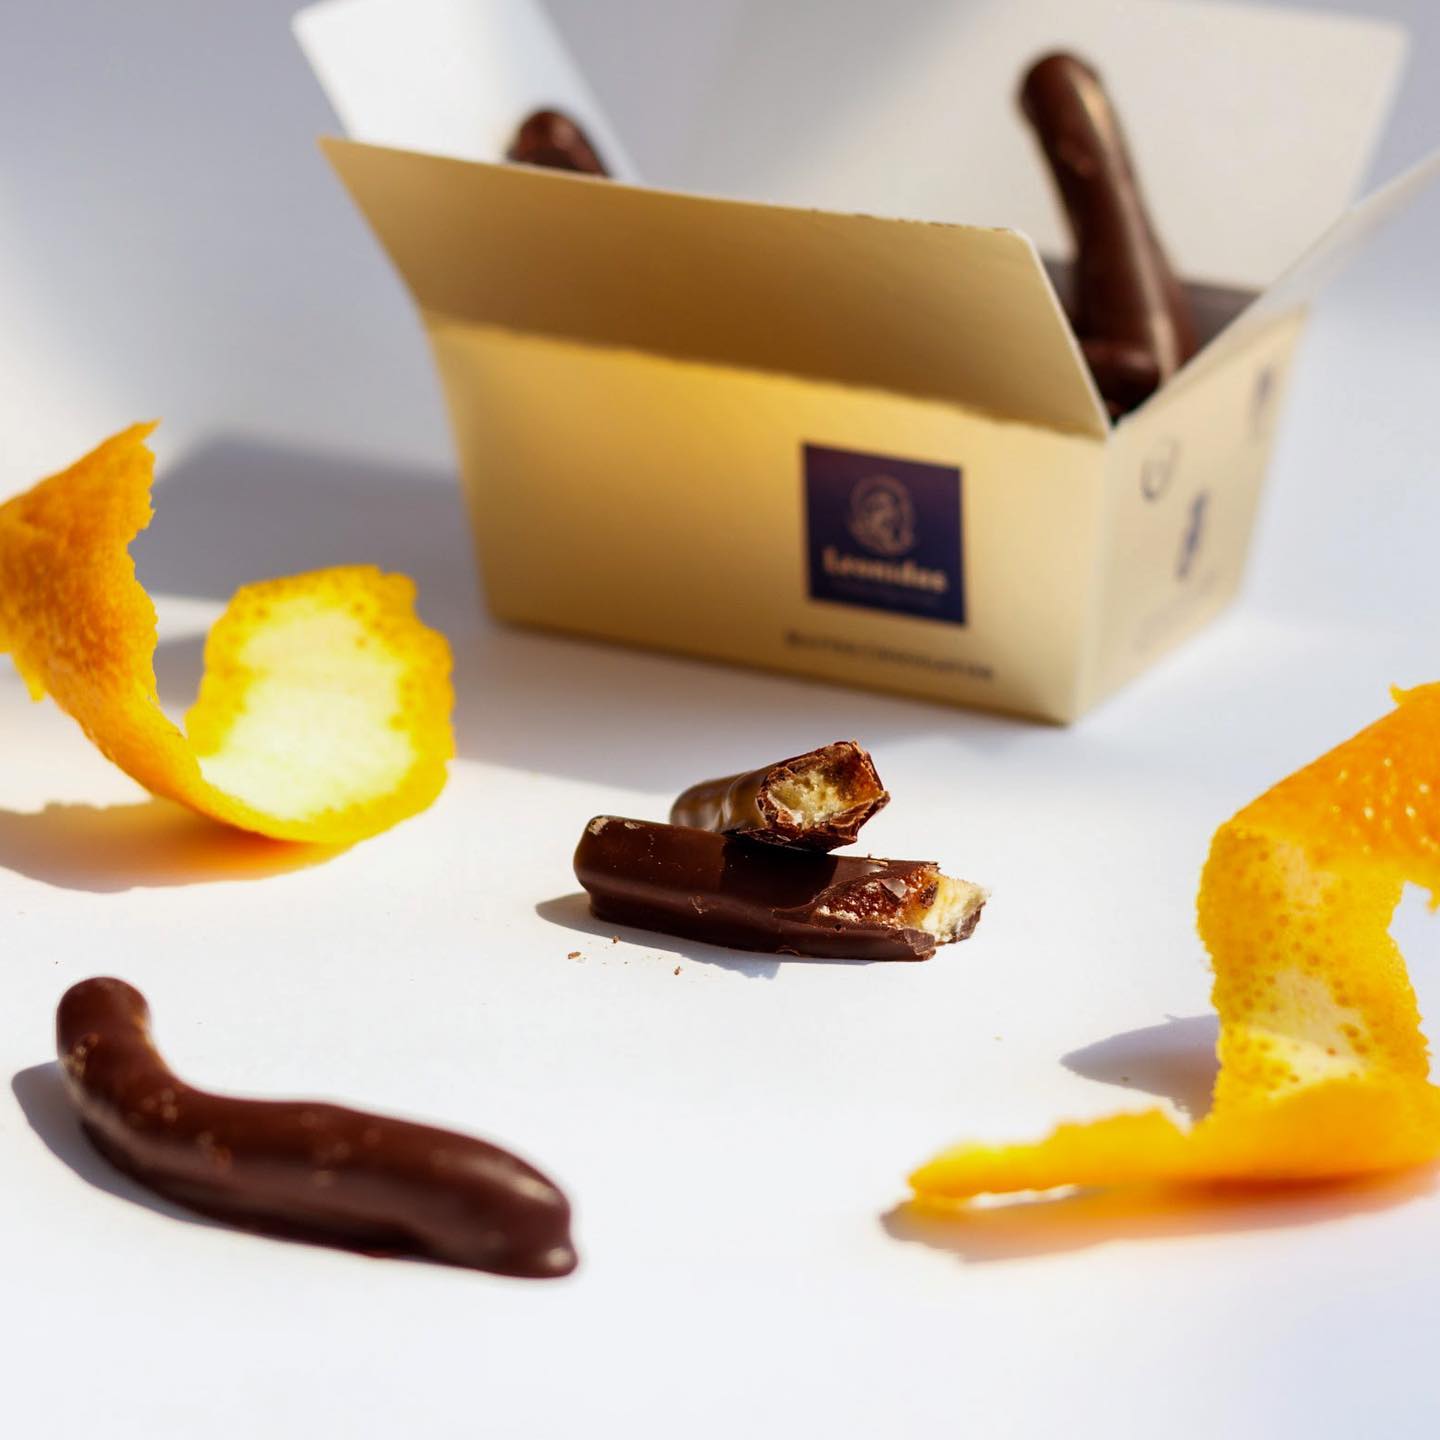 Один из любимых видов шоколада в нашей лавке.
Яркий, насыщенный вкус цедры апельсина 🍊и терпкий вкус чёрного шоколада - сочетание, которое понравится каждому.

Если уже пробовали этот шоколад - пишите в комментариях. ☺️

Напоминаем что на нашем сайте можно оформить заказ с доставкой по Кишиневу!

🌎Leonidascafe.md
📞 07 99 88 018